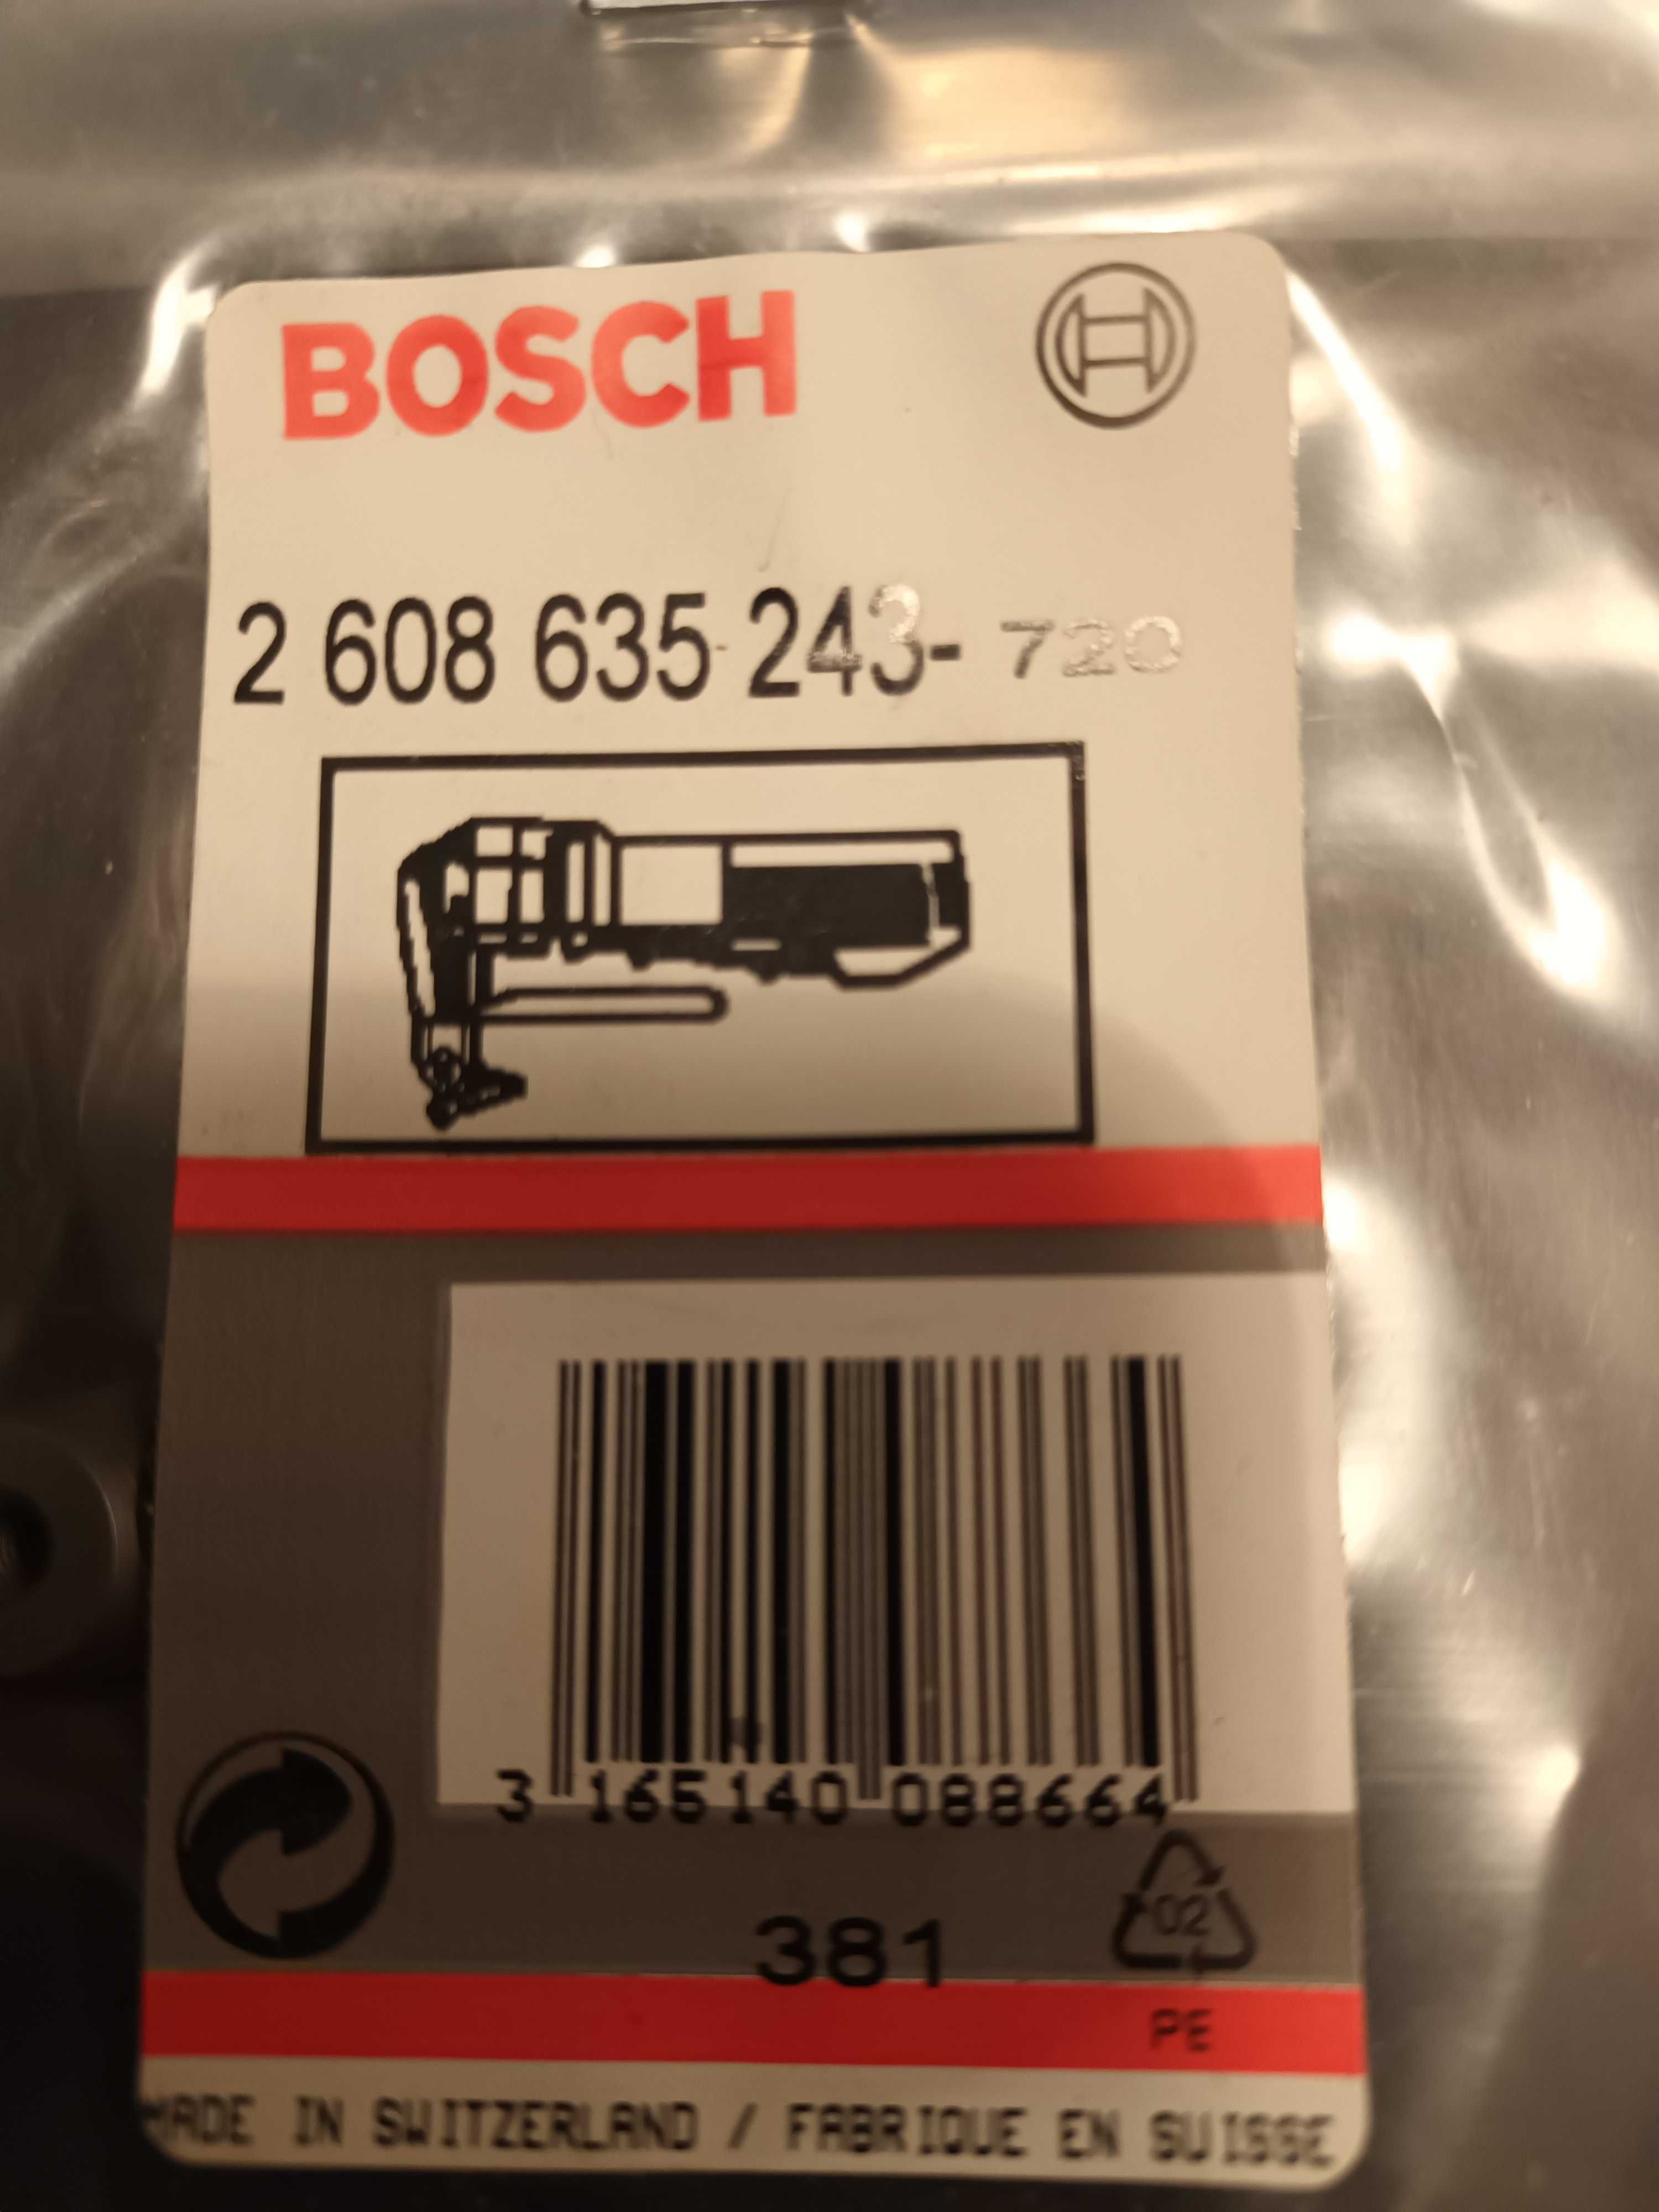 Sprzedam górne noże do nożyc do blachy firmy Bosch